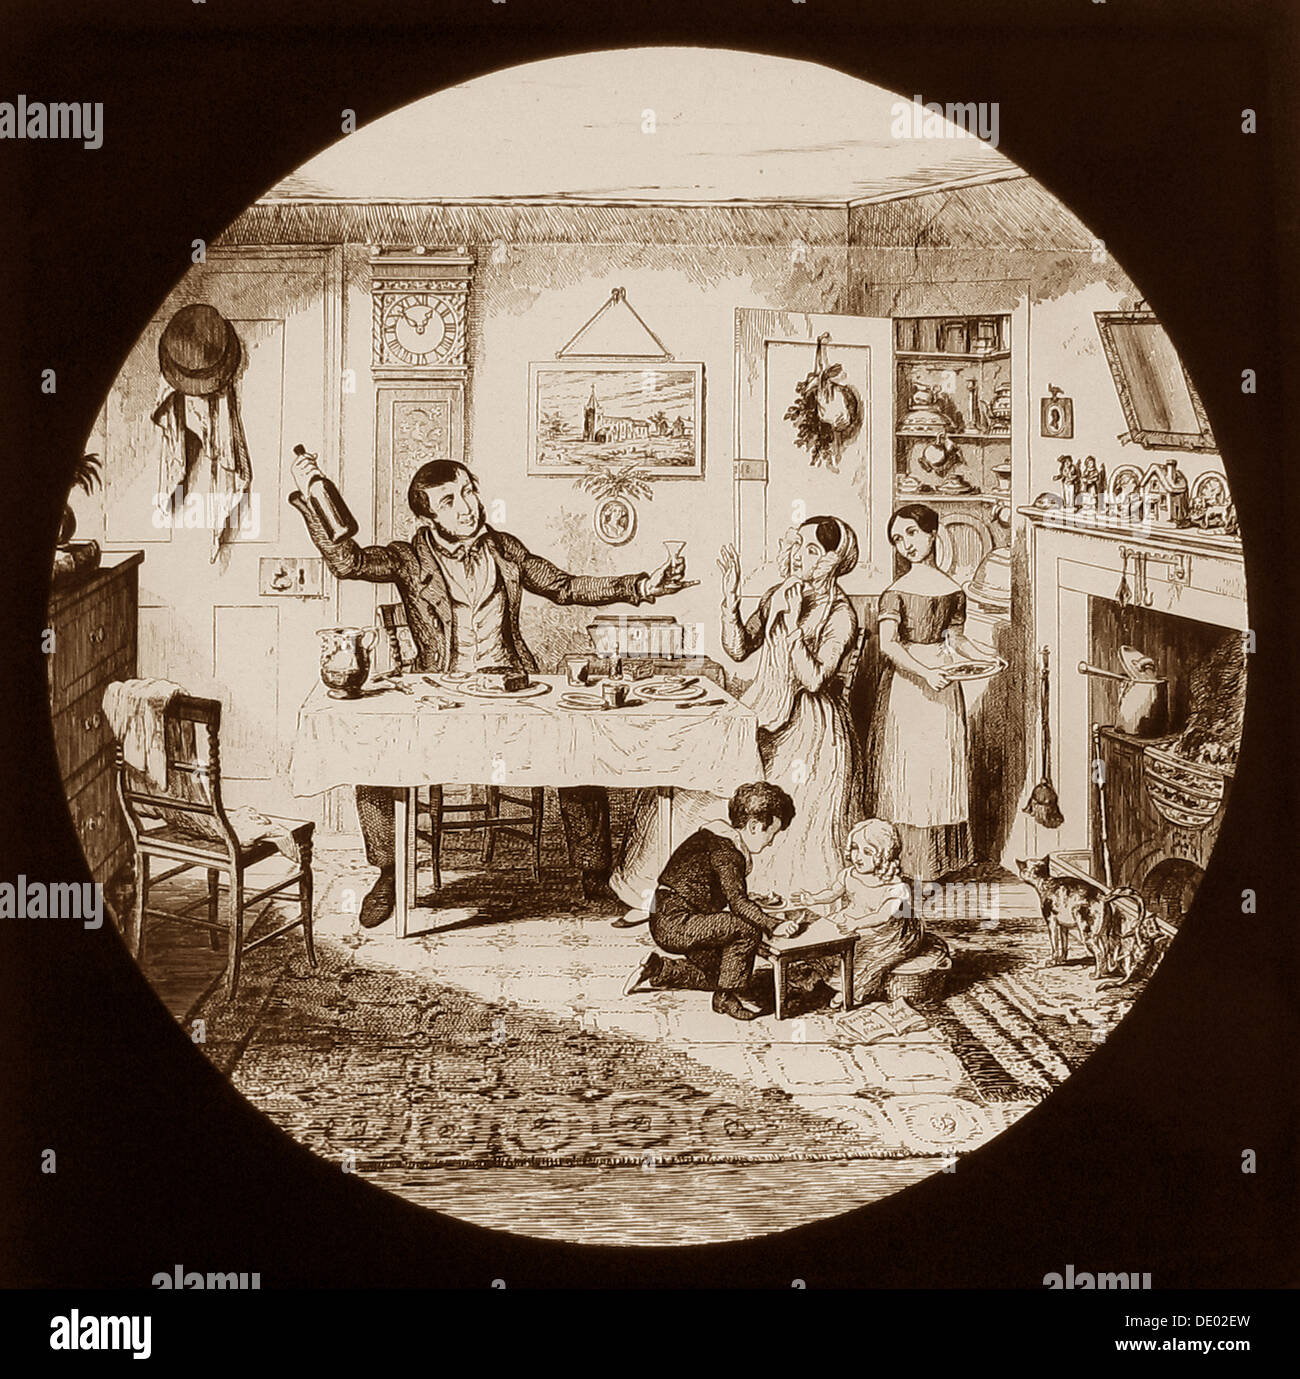 La bouteille - Une Temperance histoire écrite par George Cruikshank publié en 1847 - prises à partir de diapositives de lanterne magique - diapositive n°1 Banque D'Images